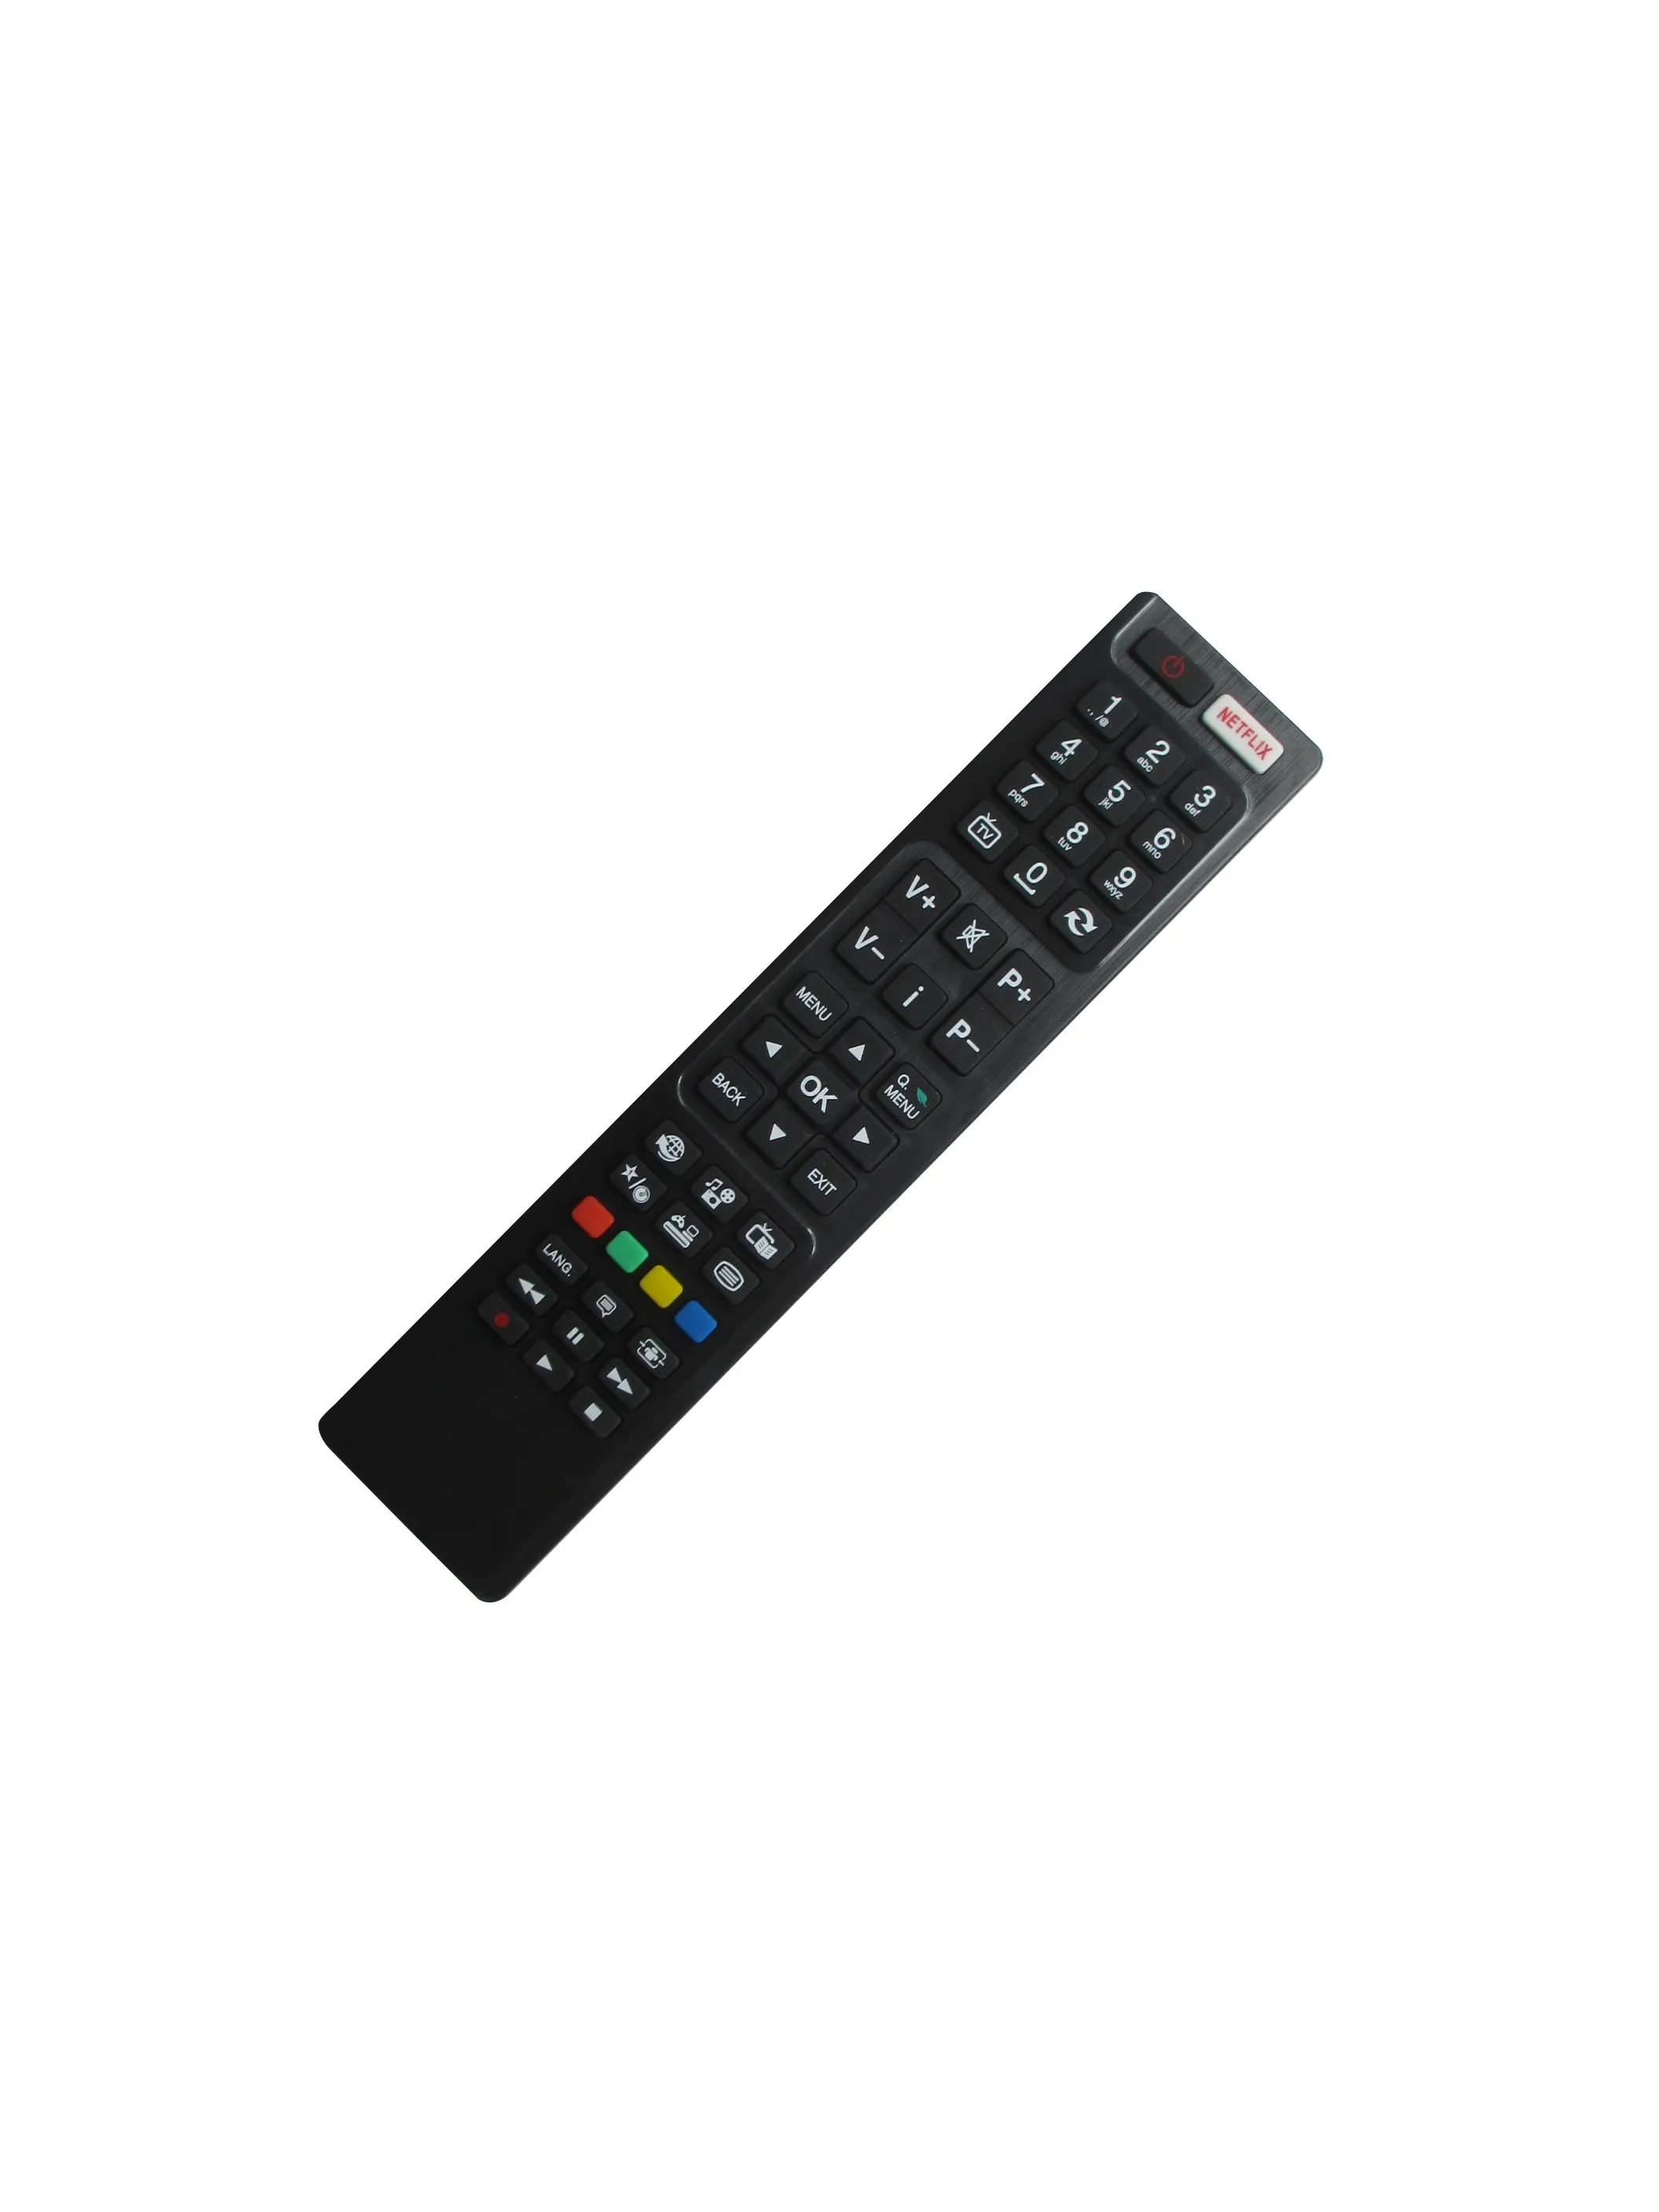 Remote Control For JVC LT-48VU83A LT-49VU83A LT-49VF53A LT-40VG564 LT-55VU83A RC-4848 LT-40VT70G LT-48VT70G LT-48VN70P LT-48VU83A LT-55VU83A LT-55HW87U LCD HDTV TV